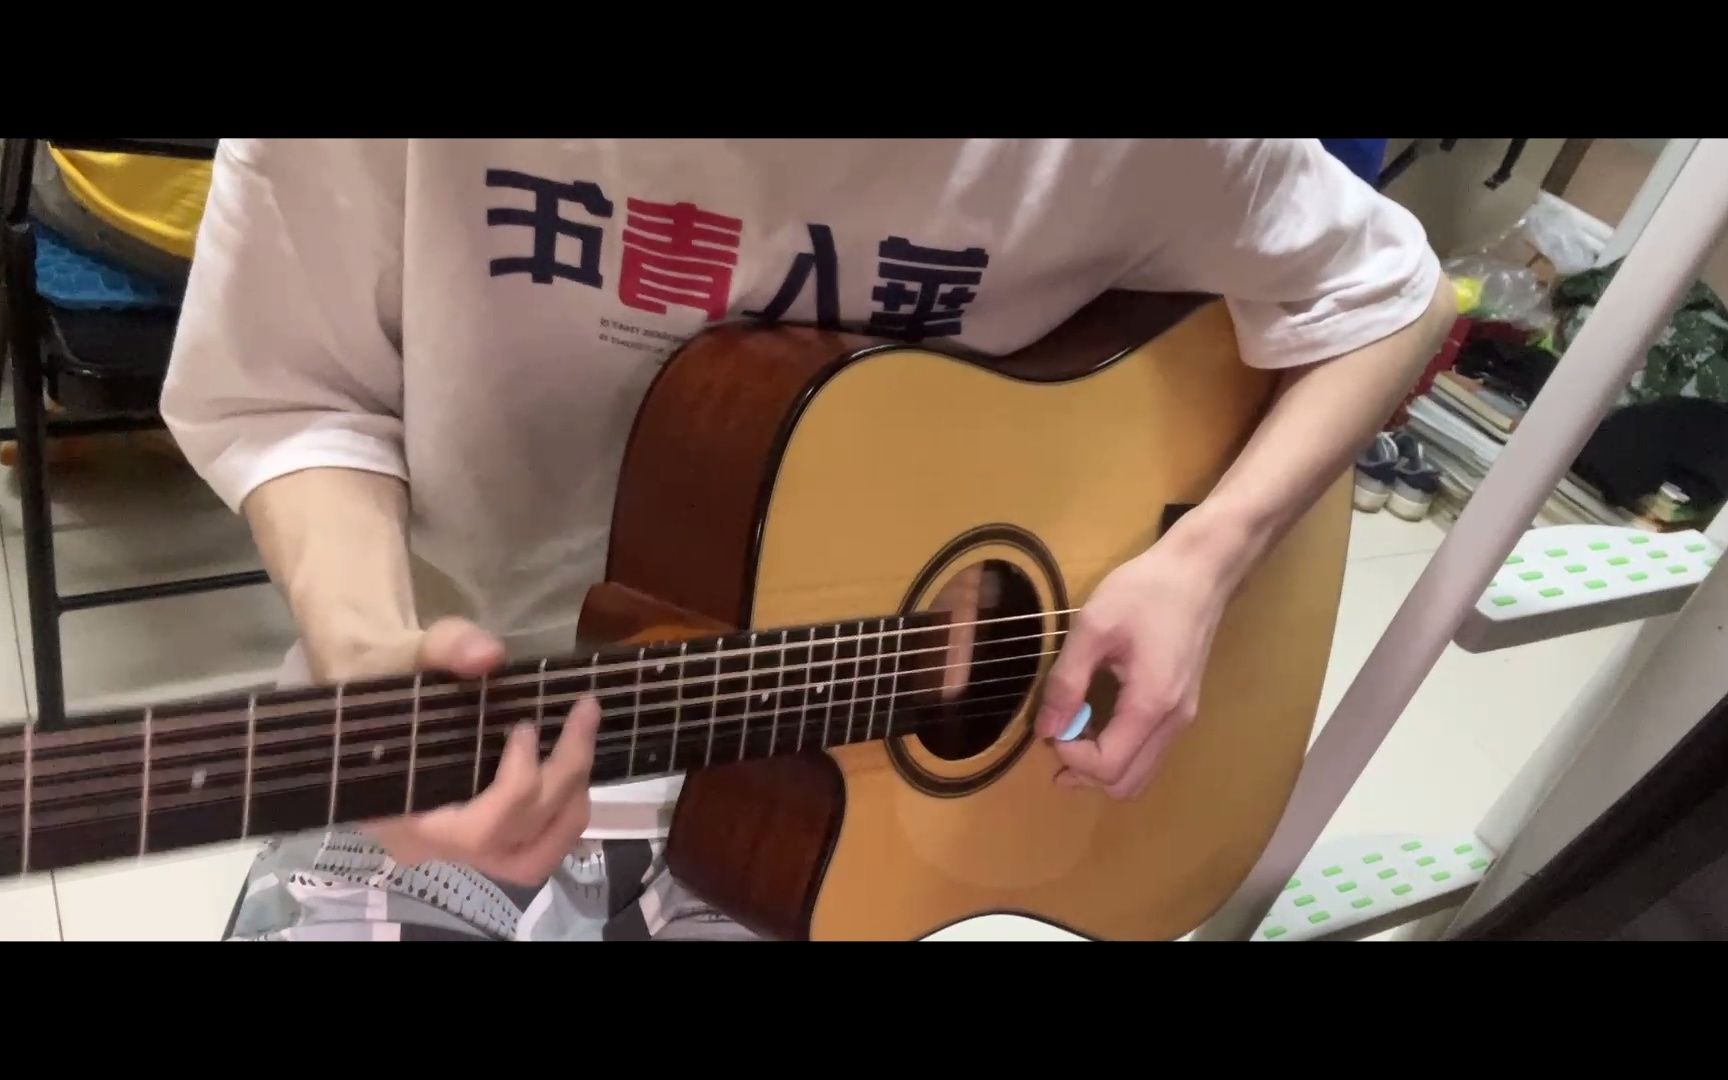 【起风了间奏solo】学了一个礼拜就弹《起风了》间奏木吉他solo的人。